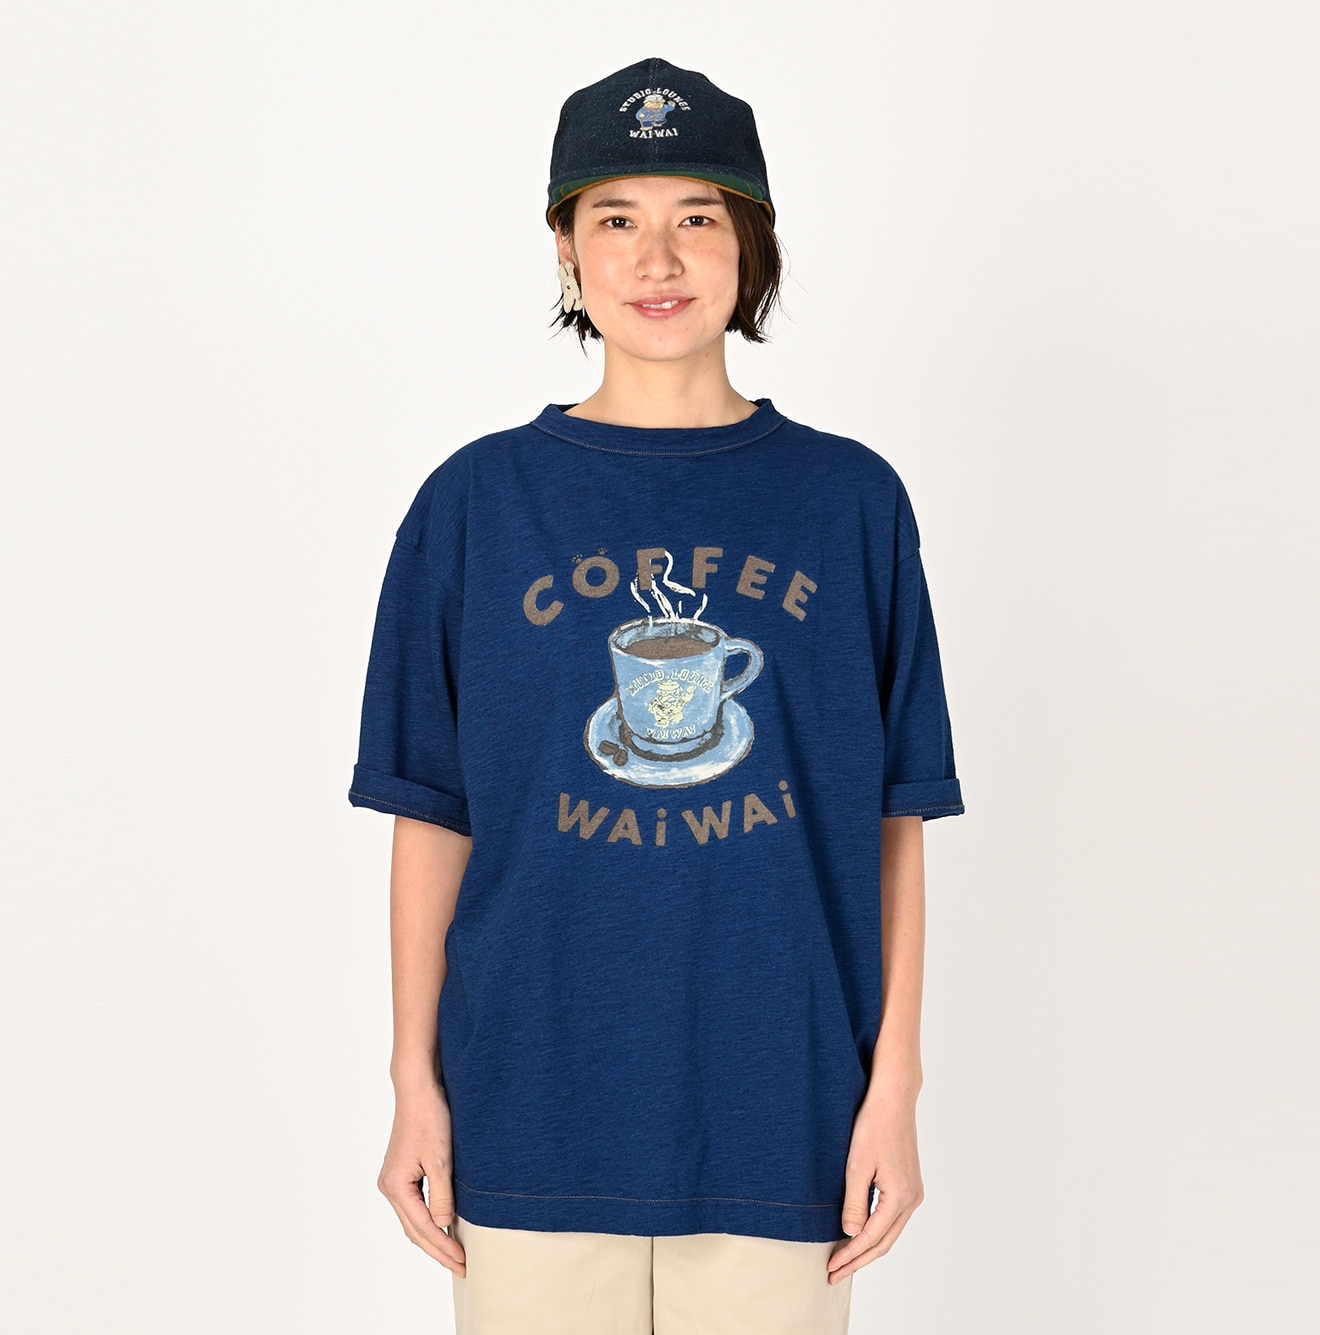 45RWAIWAI コーヒーベタッチプリントの90845星Tシャツ（インディゴ 